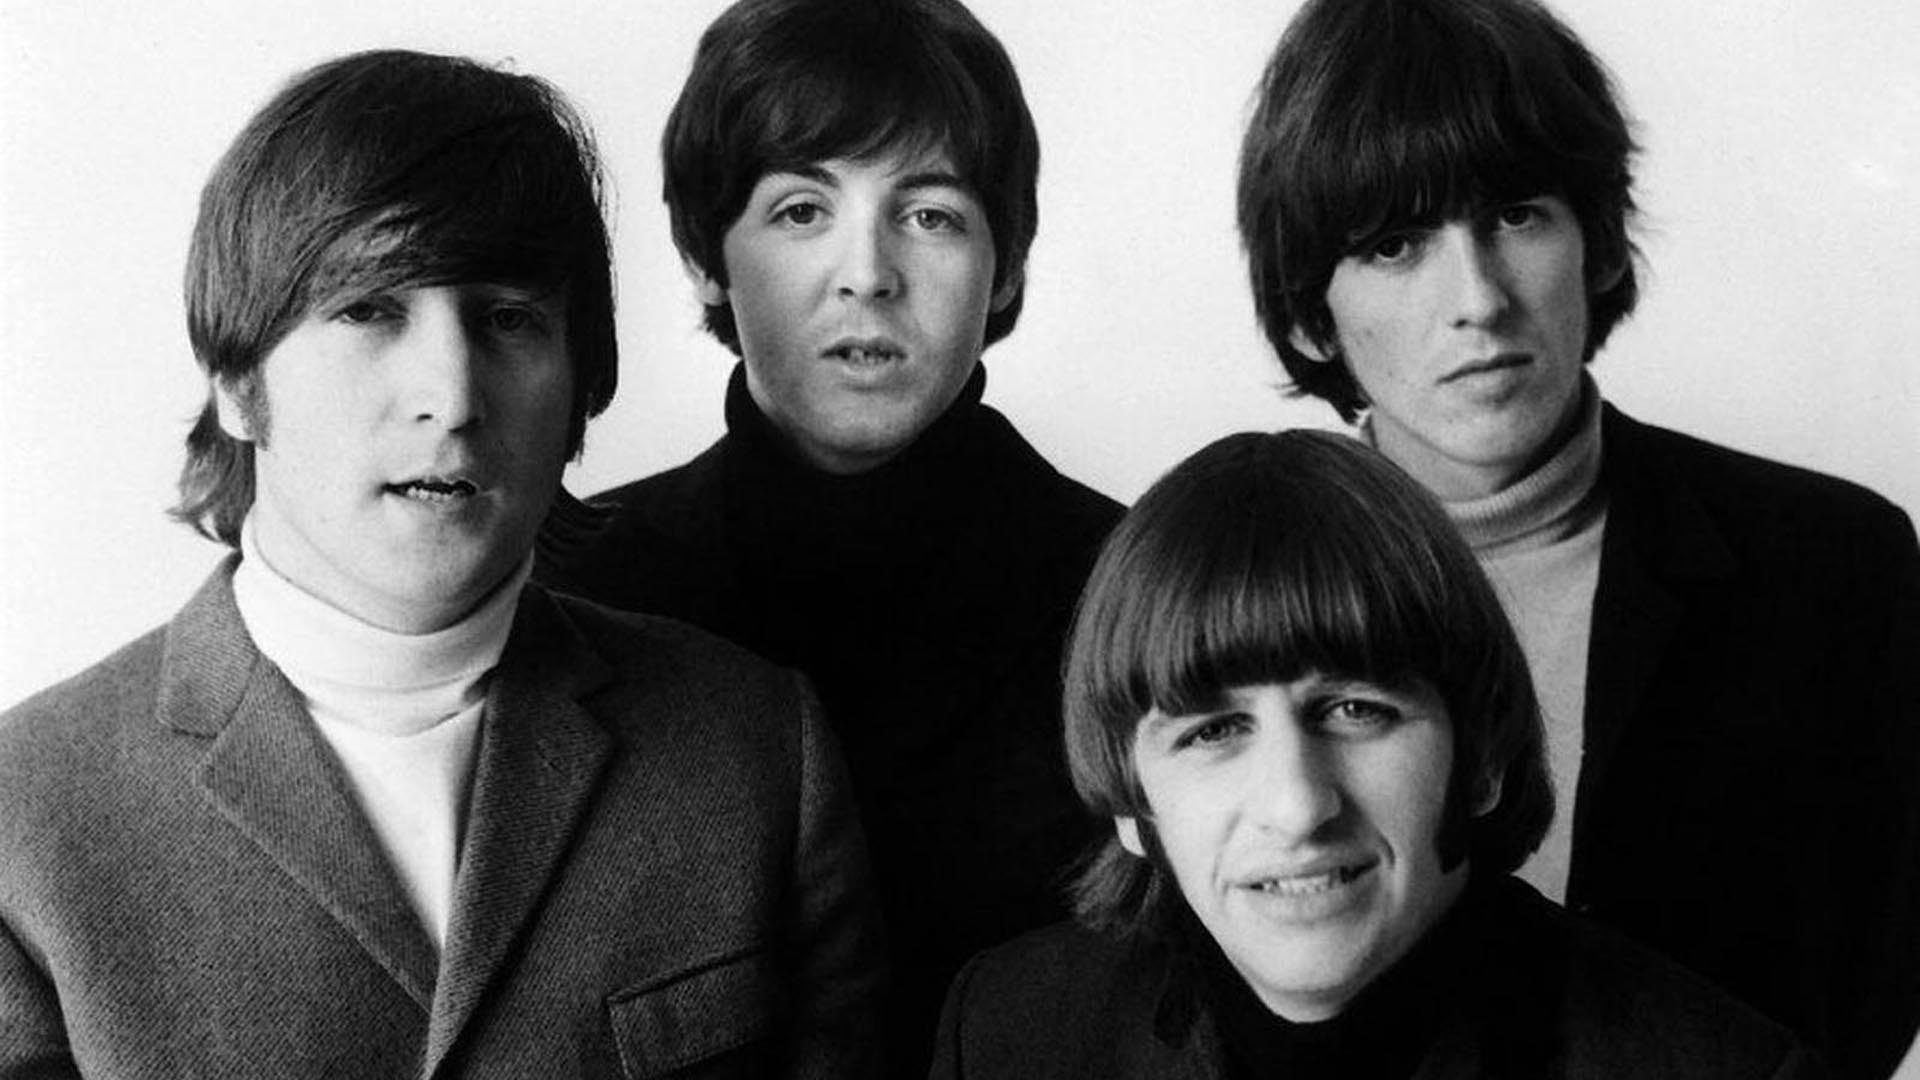 Subastan Tres Casetes Inéditos con Grabaciones de The Beatles